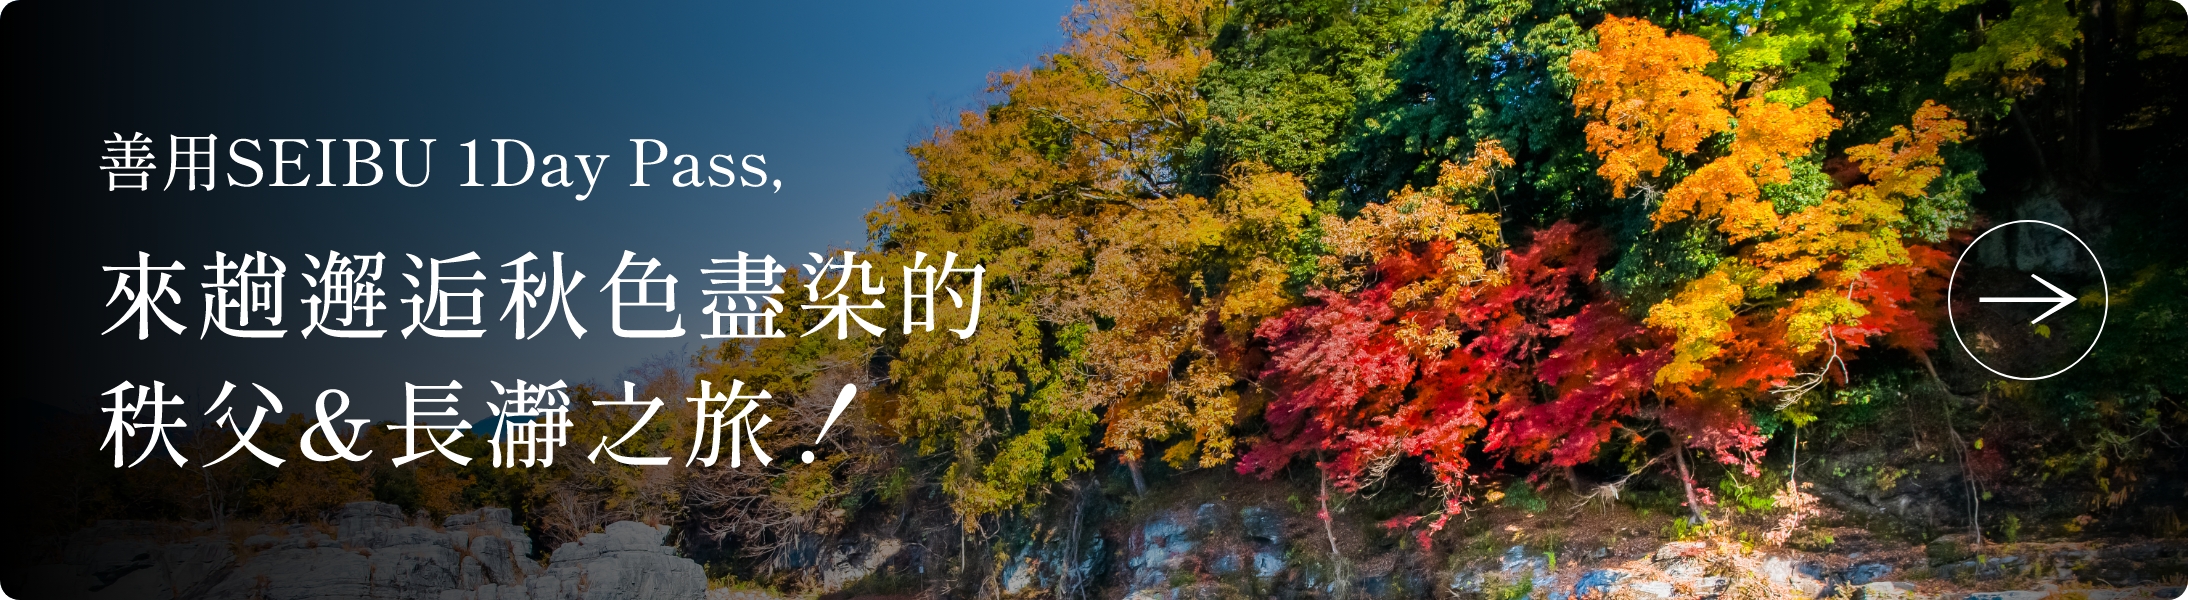 善用SEIBU 1Day Pass，<br>來趟邂逅秋色盡染的秩父&長瀞之旅！